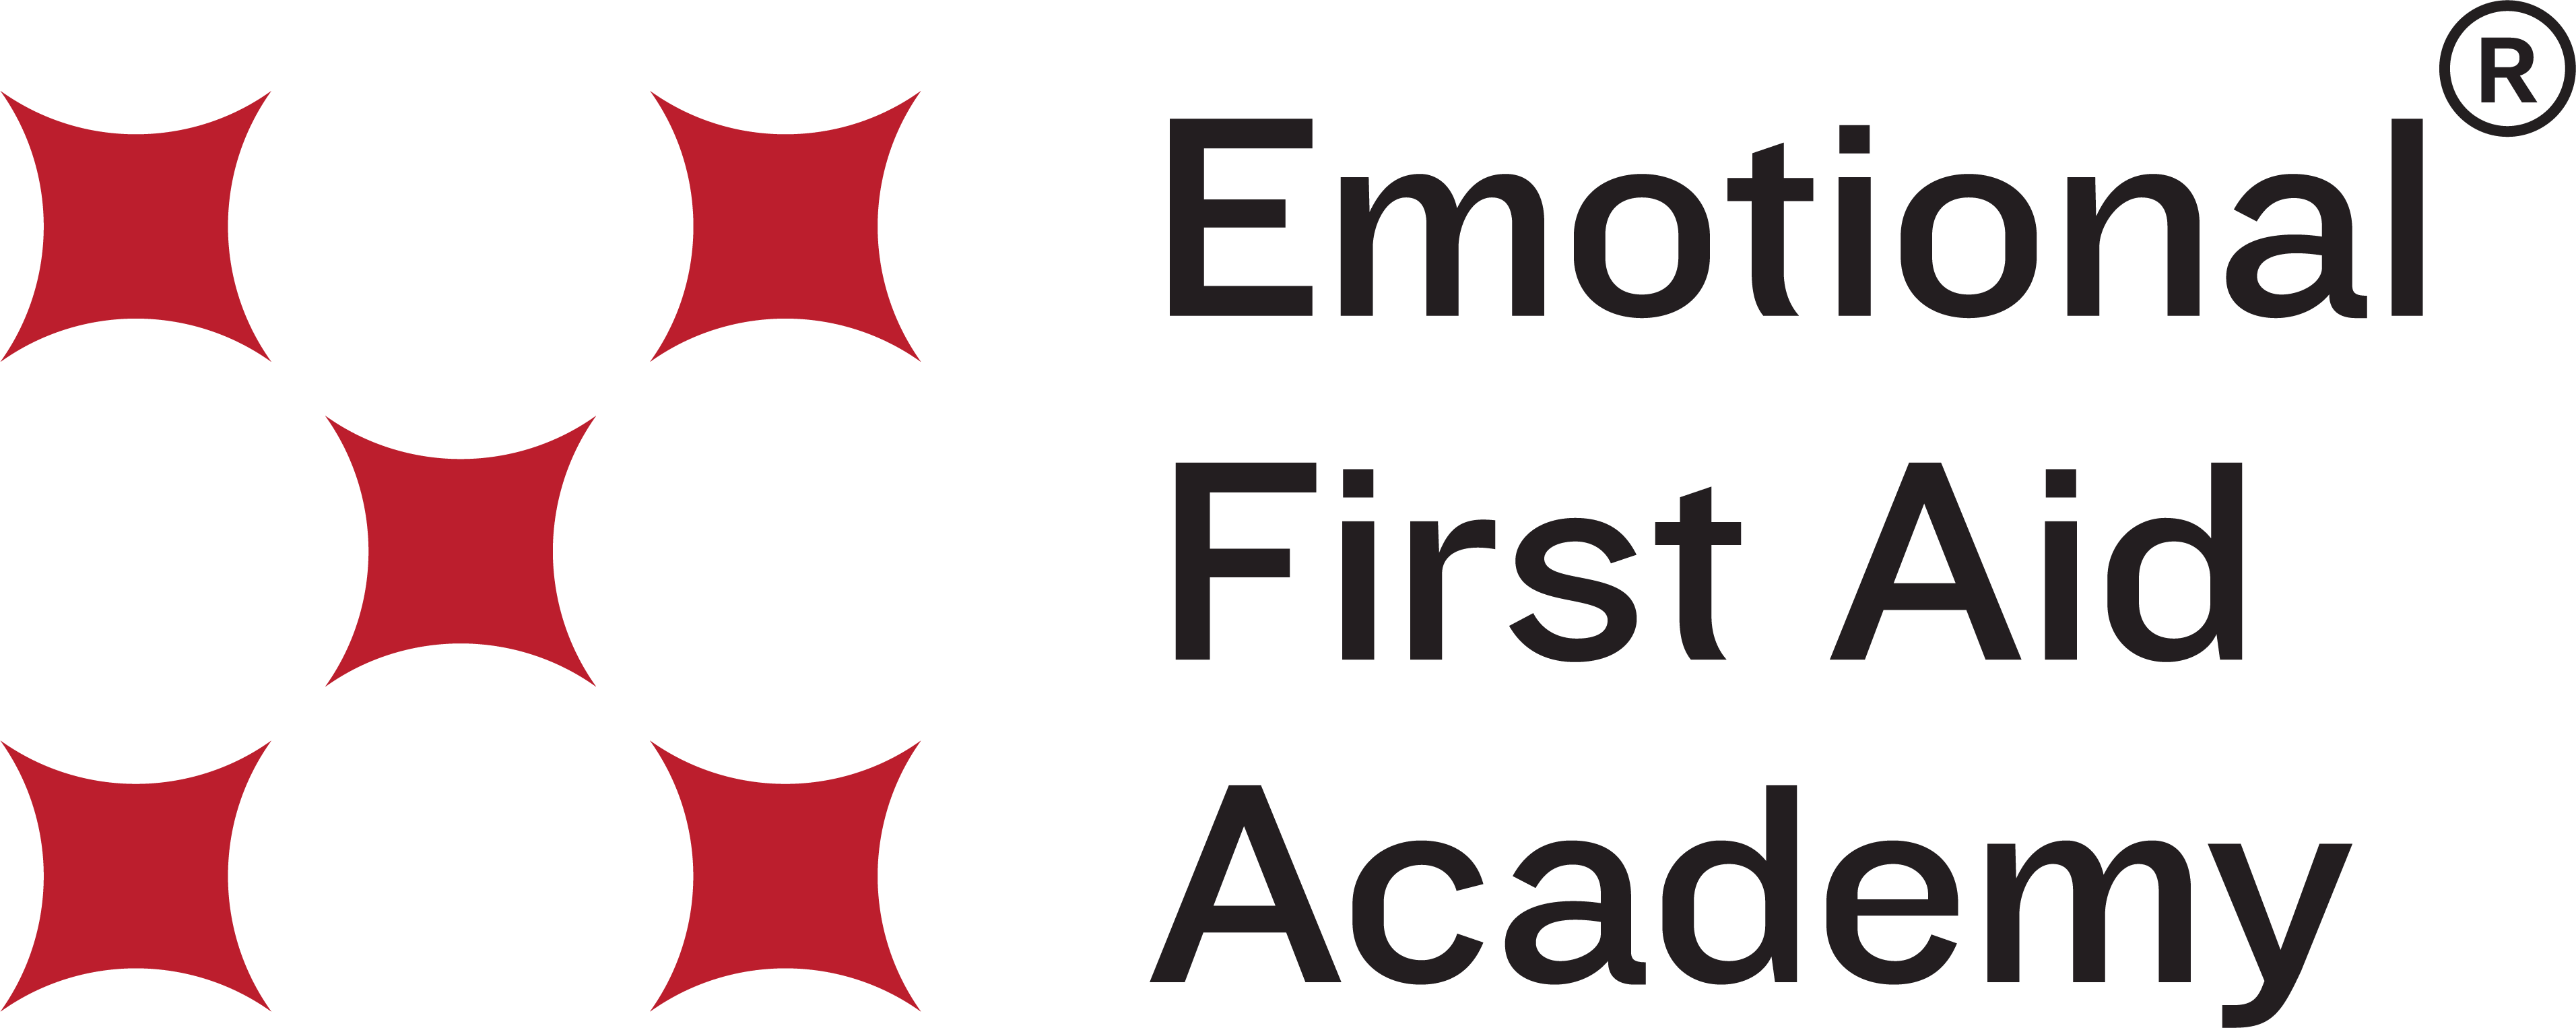 Emotional First Aid Academy